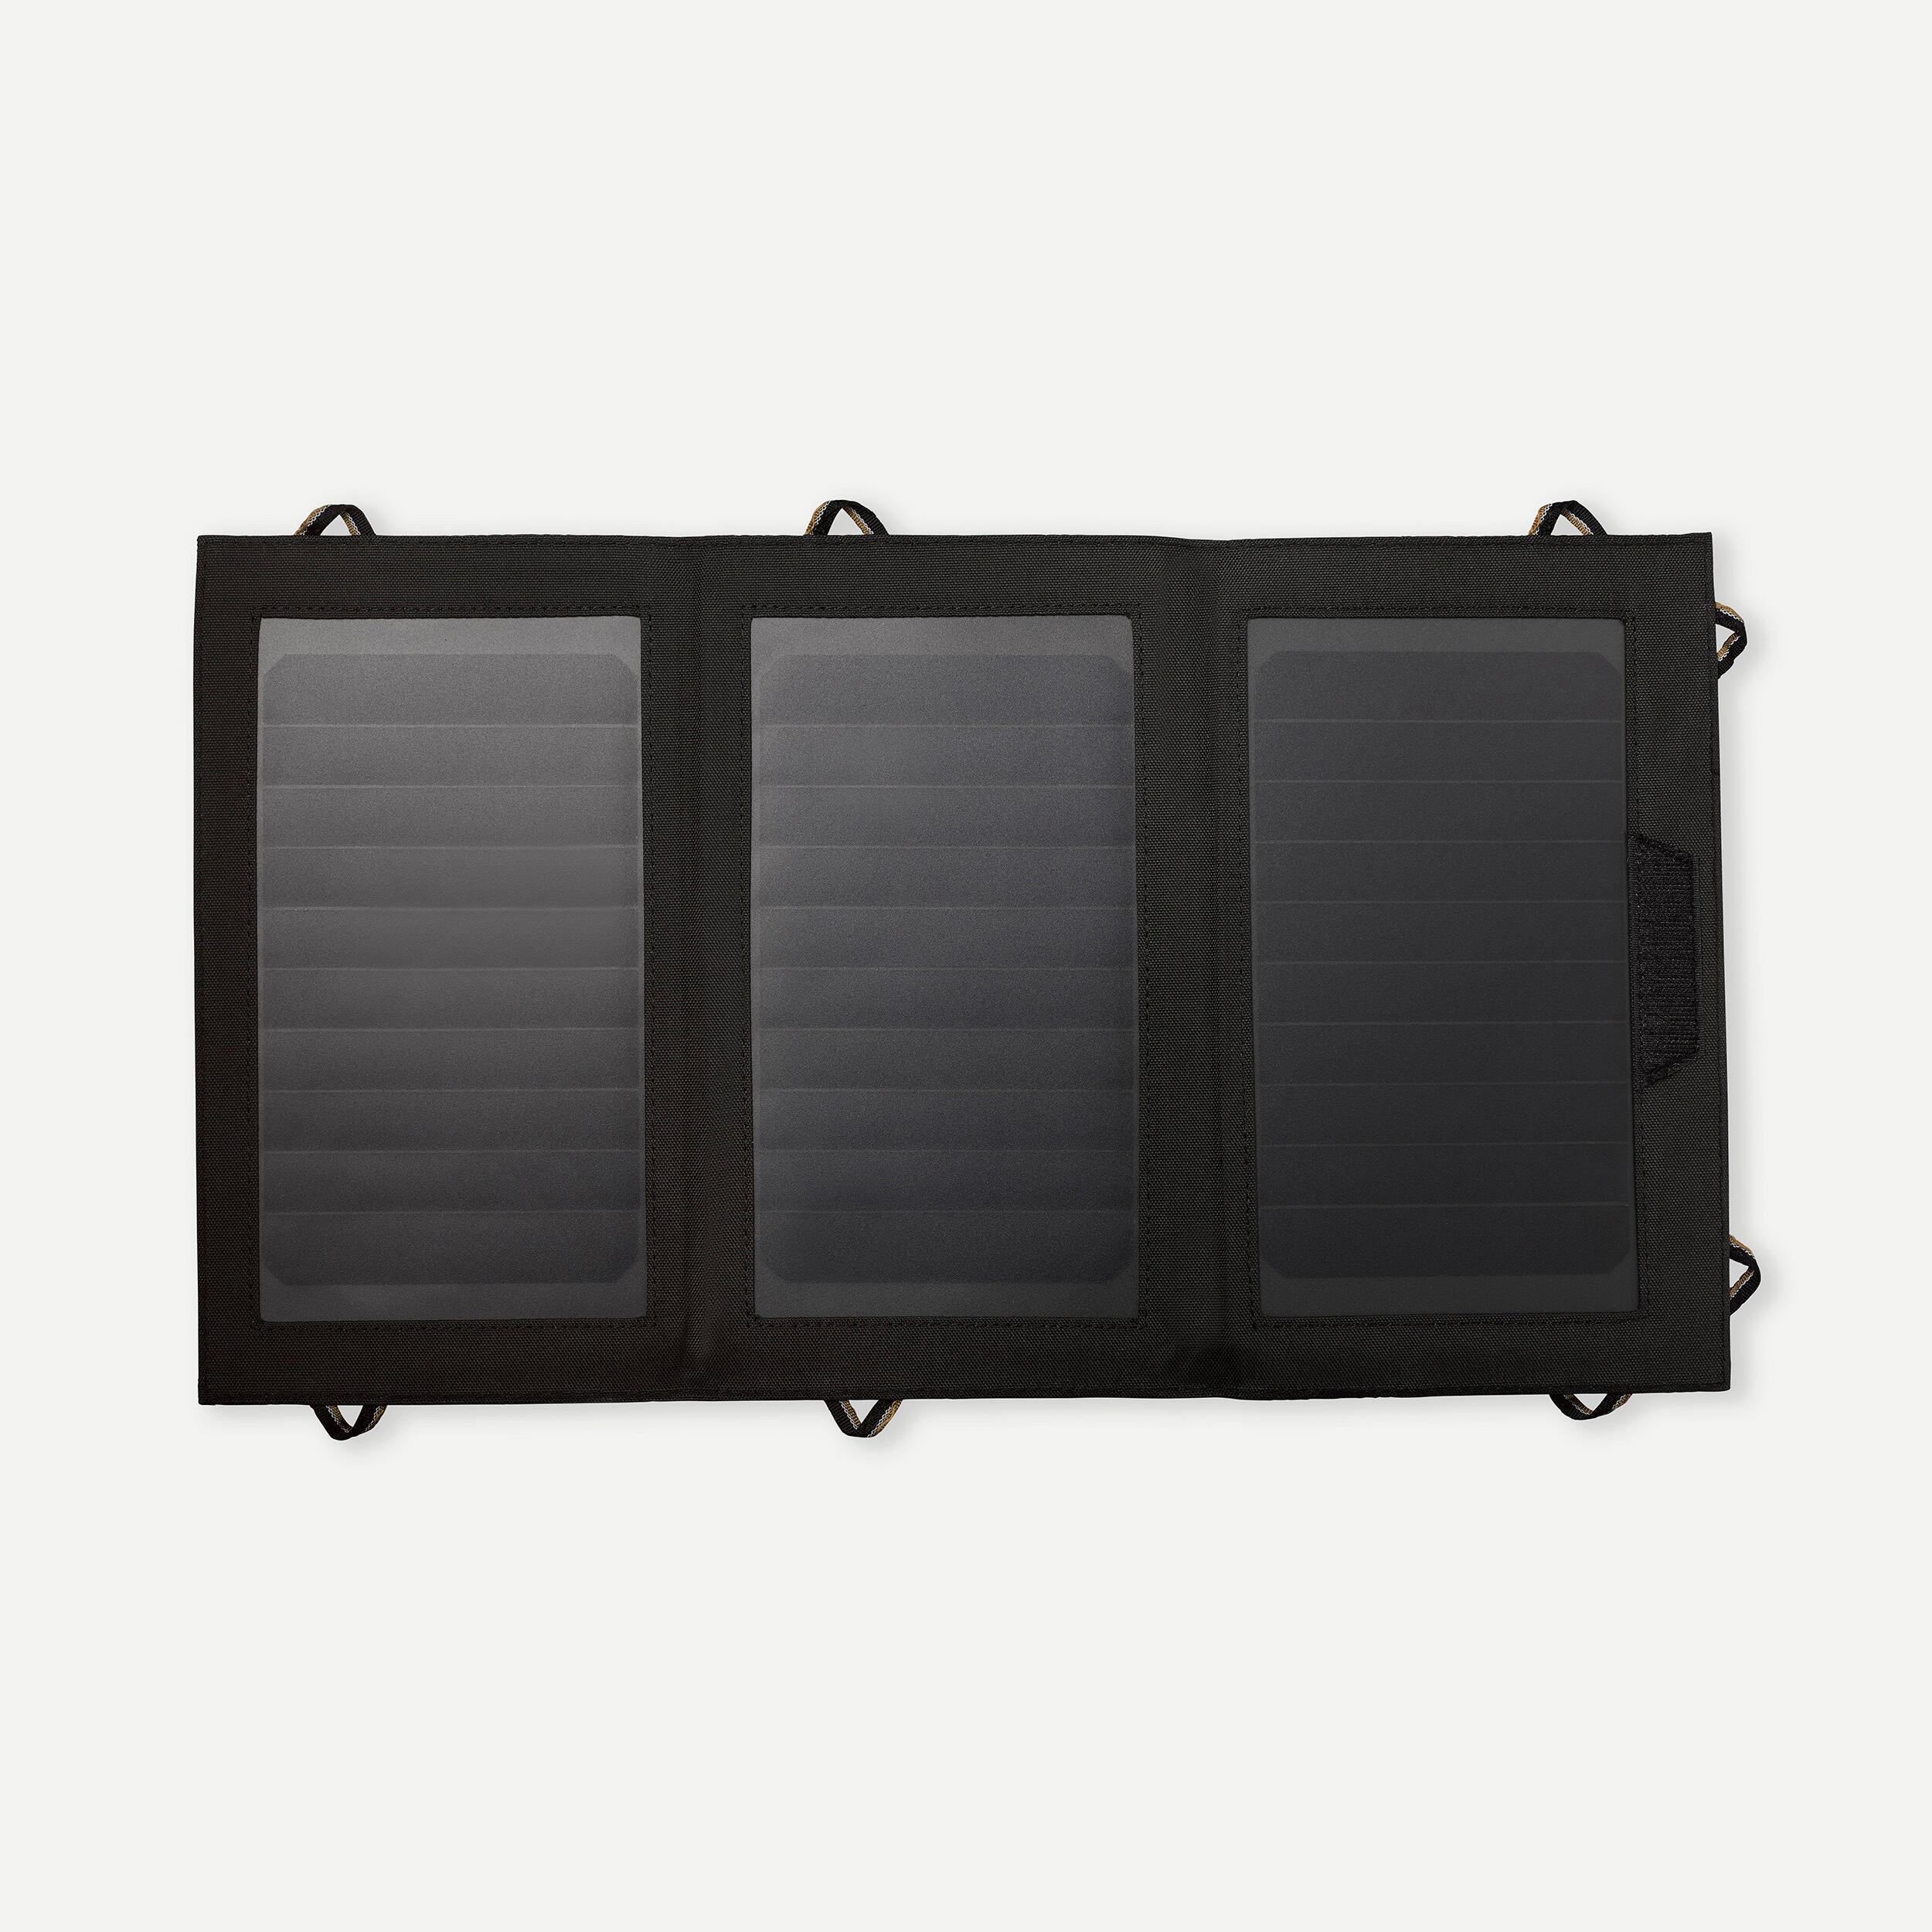 Солнечная панель SLR 900 V2 мощностью 15 Вт Forclaz